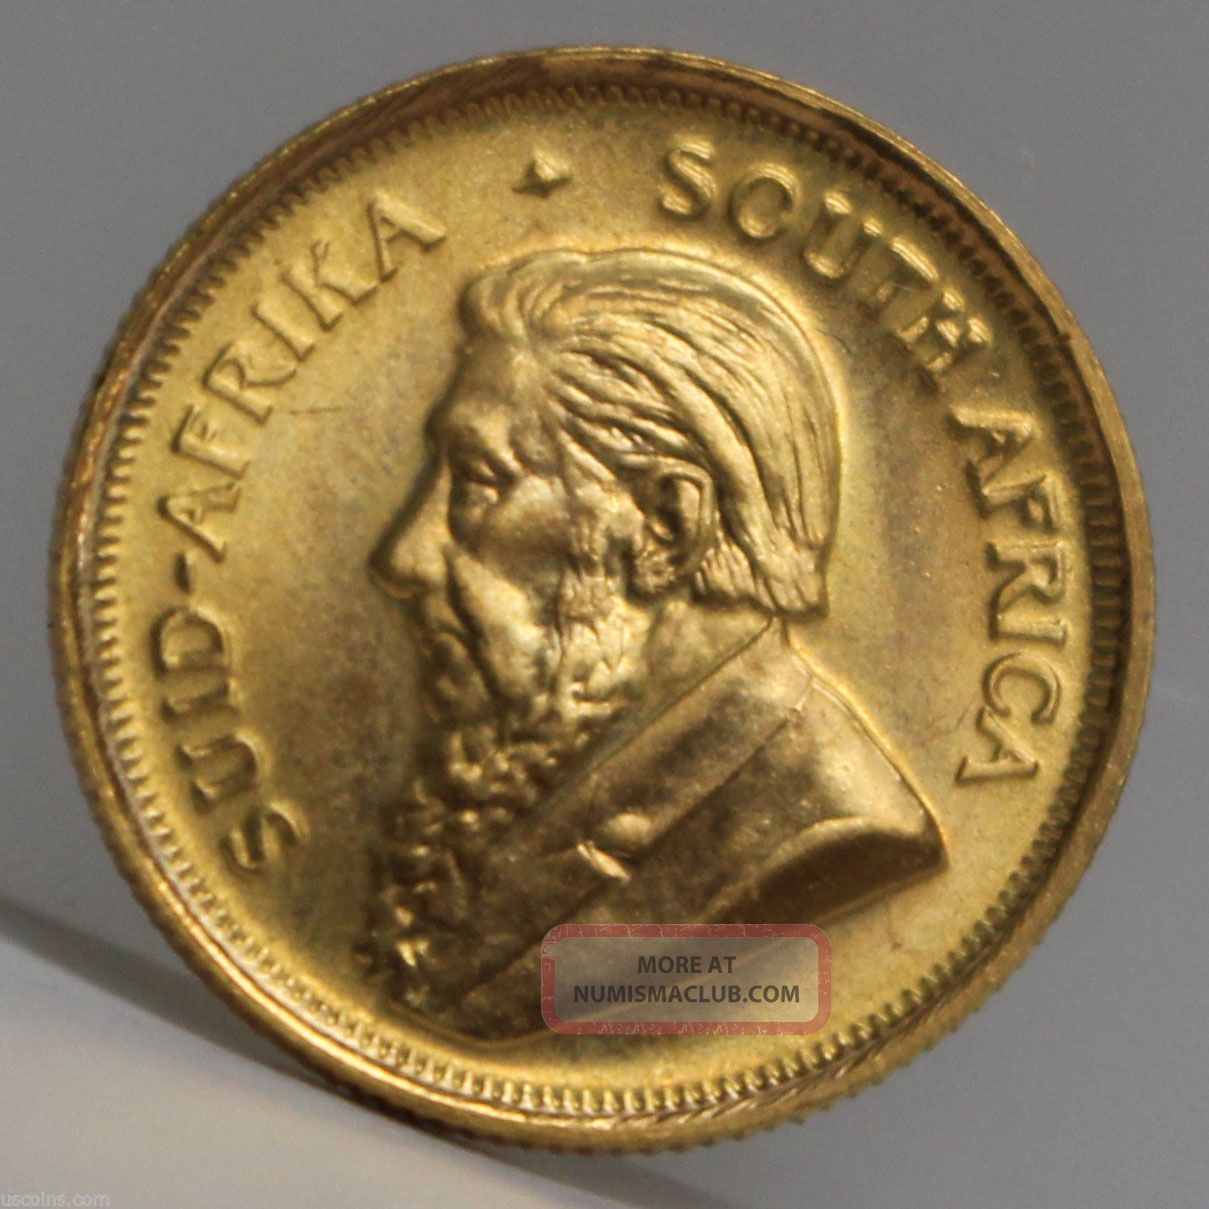 1981 krugerrand gold coin value